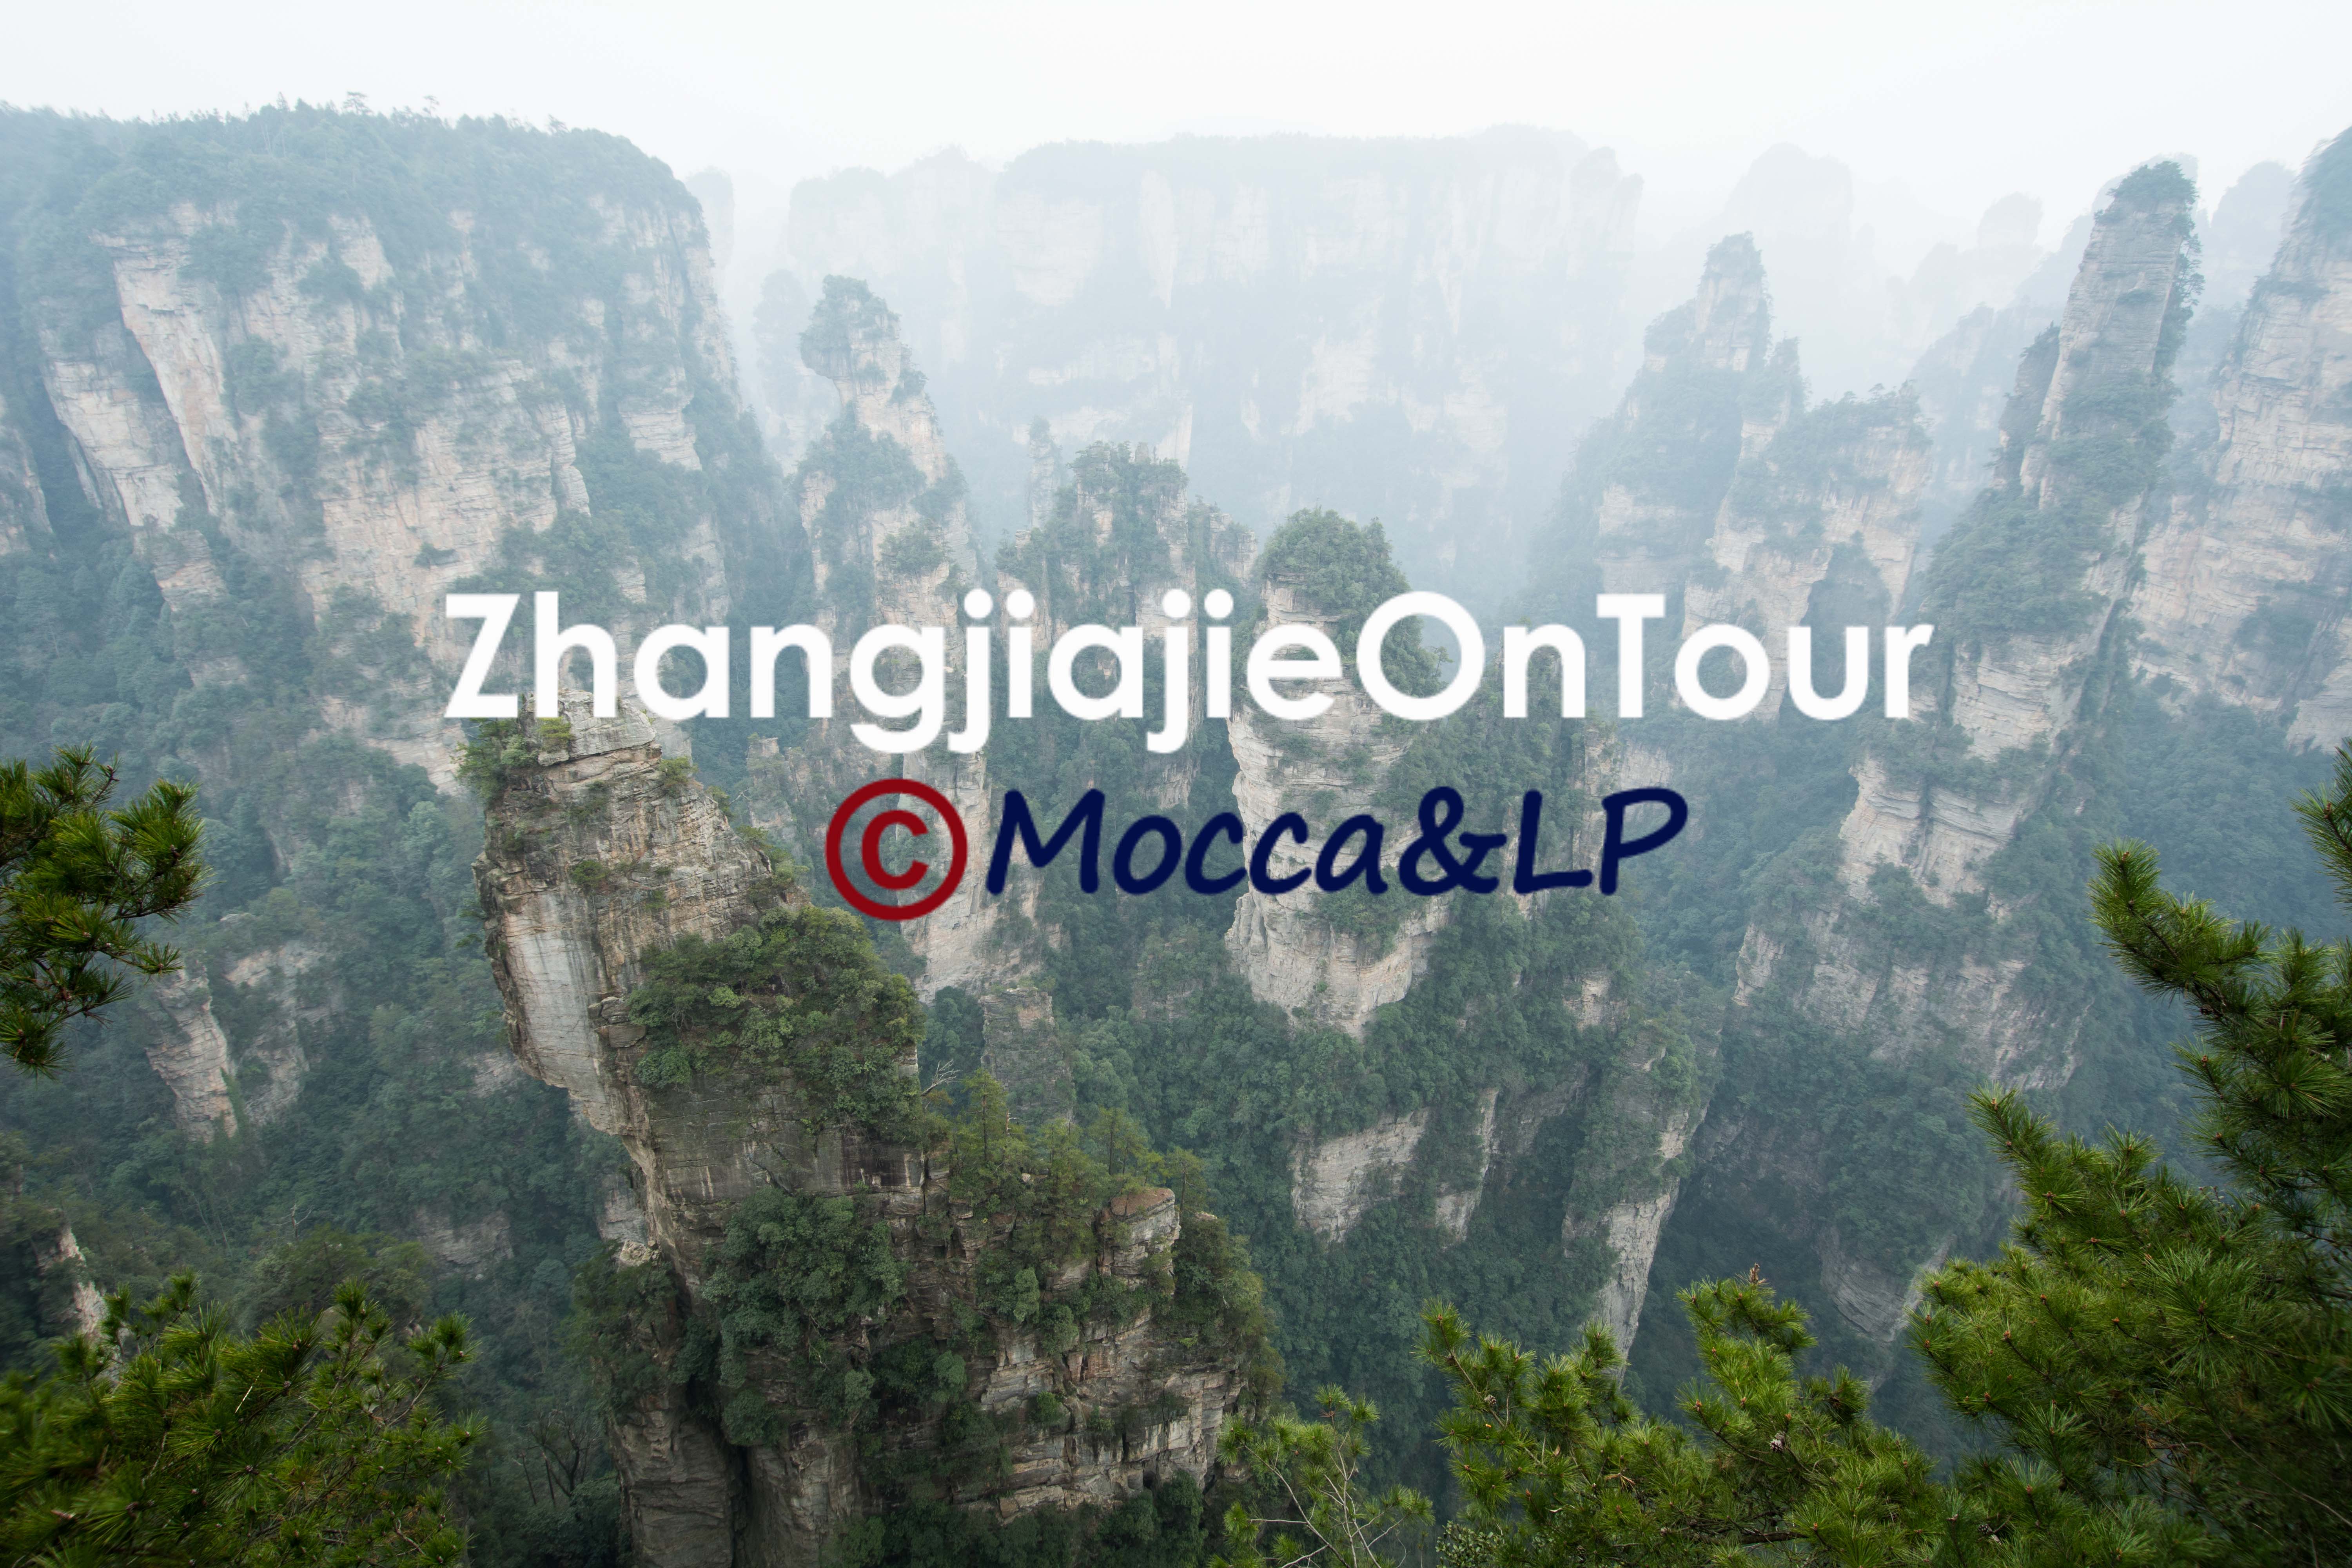 Zhangjiajie On Tour